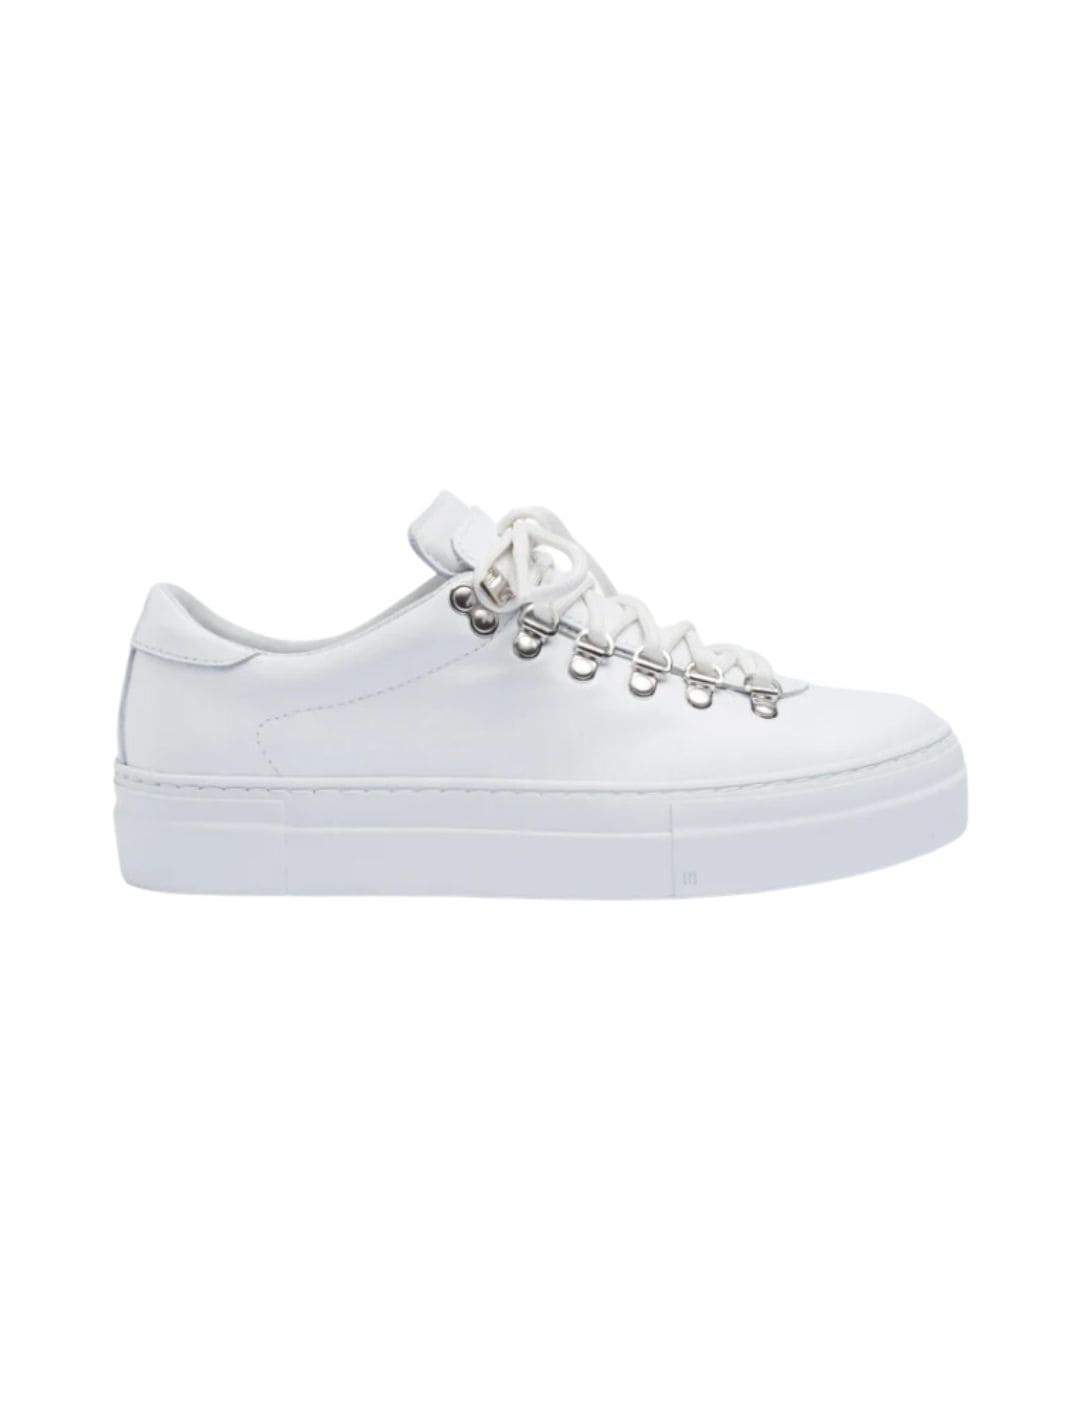 Diemme Shoes Sko | Marostica Low White Nappa Platform W